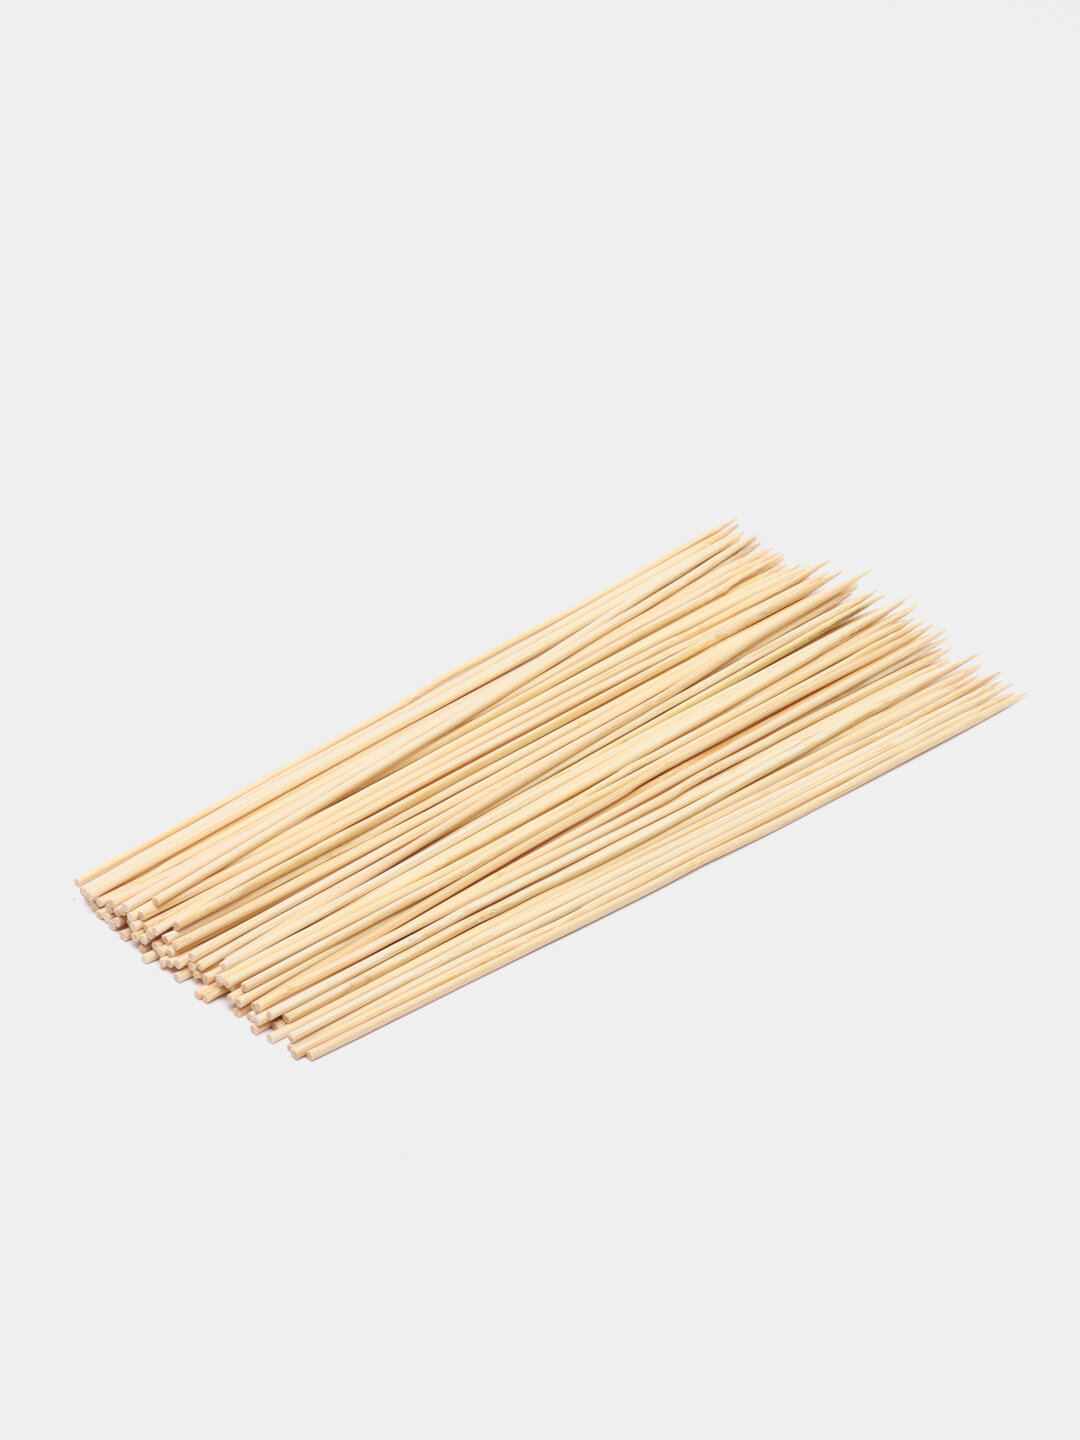 Шпажки-шампуры из бамбука для готовки, 30 см - фотография № 1